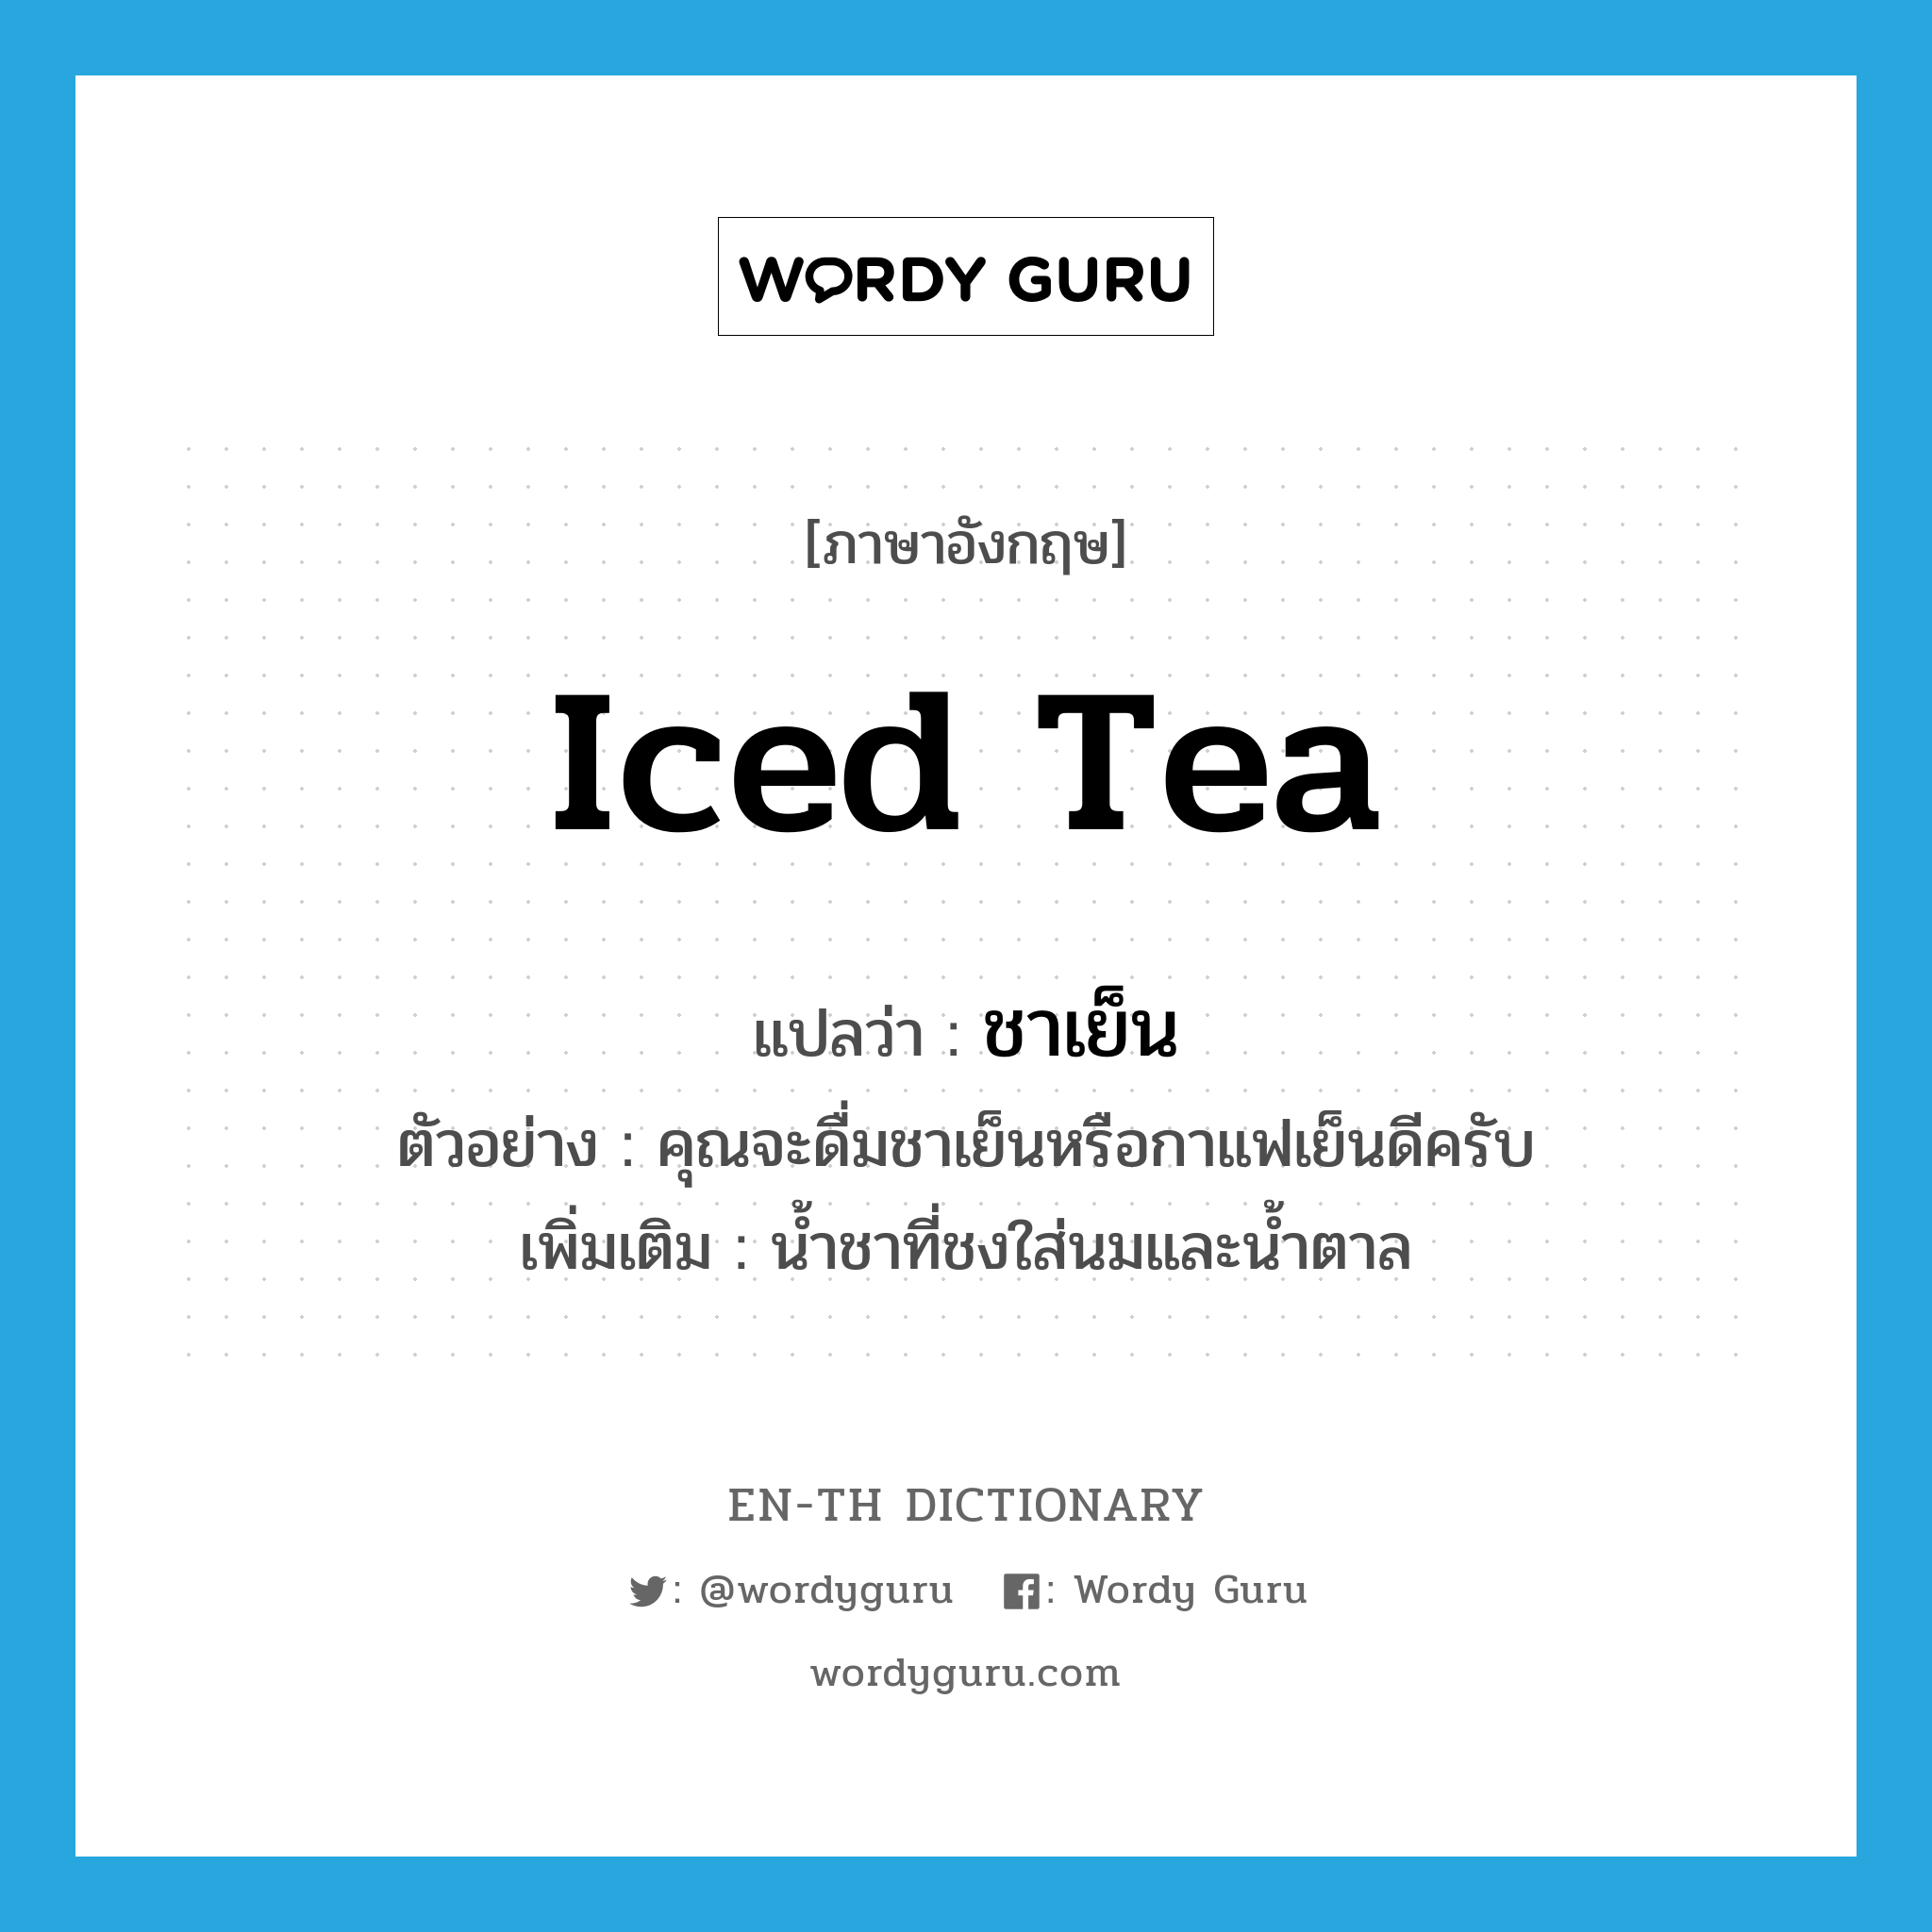 ชาเย็น ภาษาอังกฤษ?, คำศัพท์ภาษาอังกฤษ ชาเย็น แปลว่า iced tea ประเภท N ตัวอย่าง คุณจะดื่มชาเย็นหรือกาแฟเย็นดีครับ เพิ่มเติม น้ำชาที่ชงใส่นมและน้ำตาล หมวด N